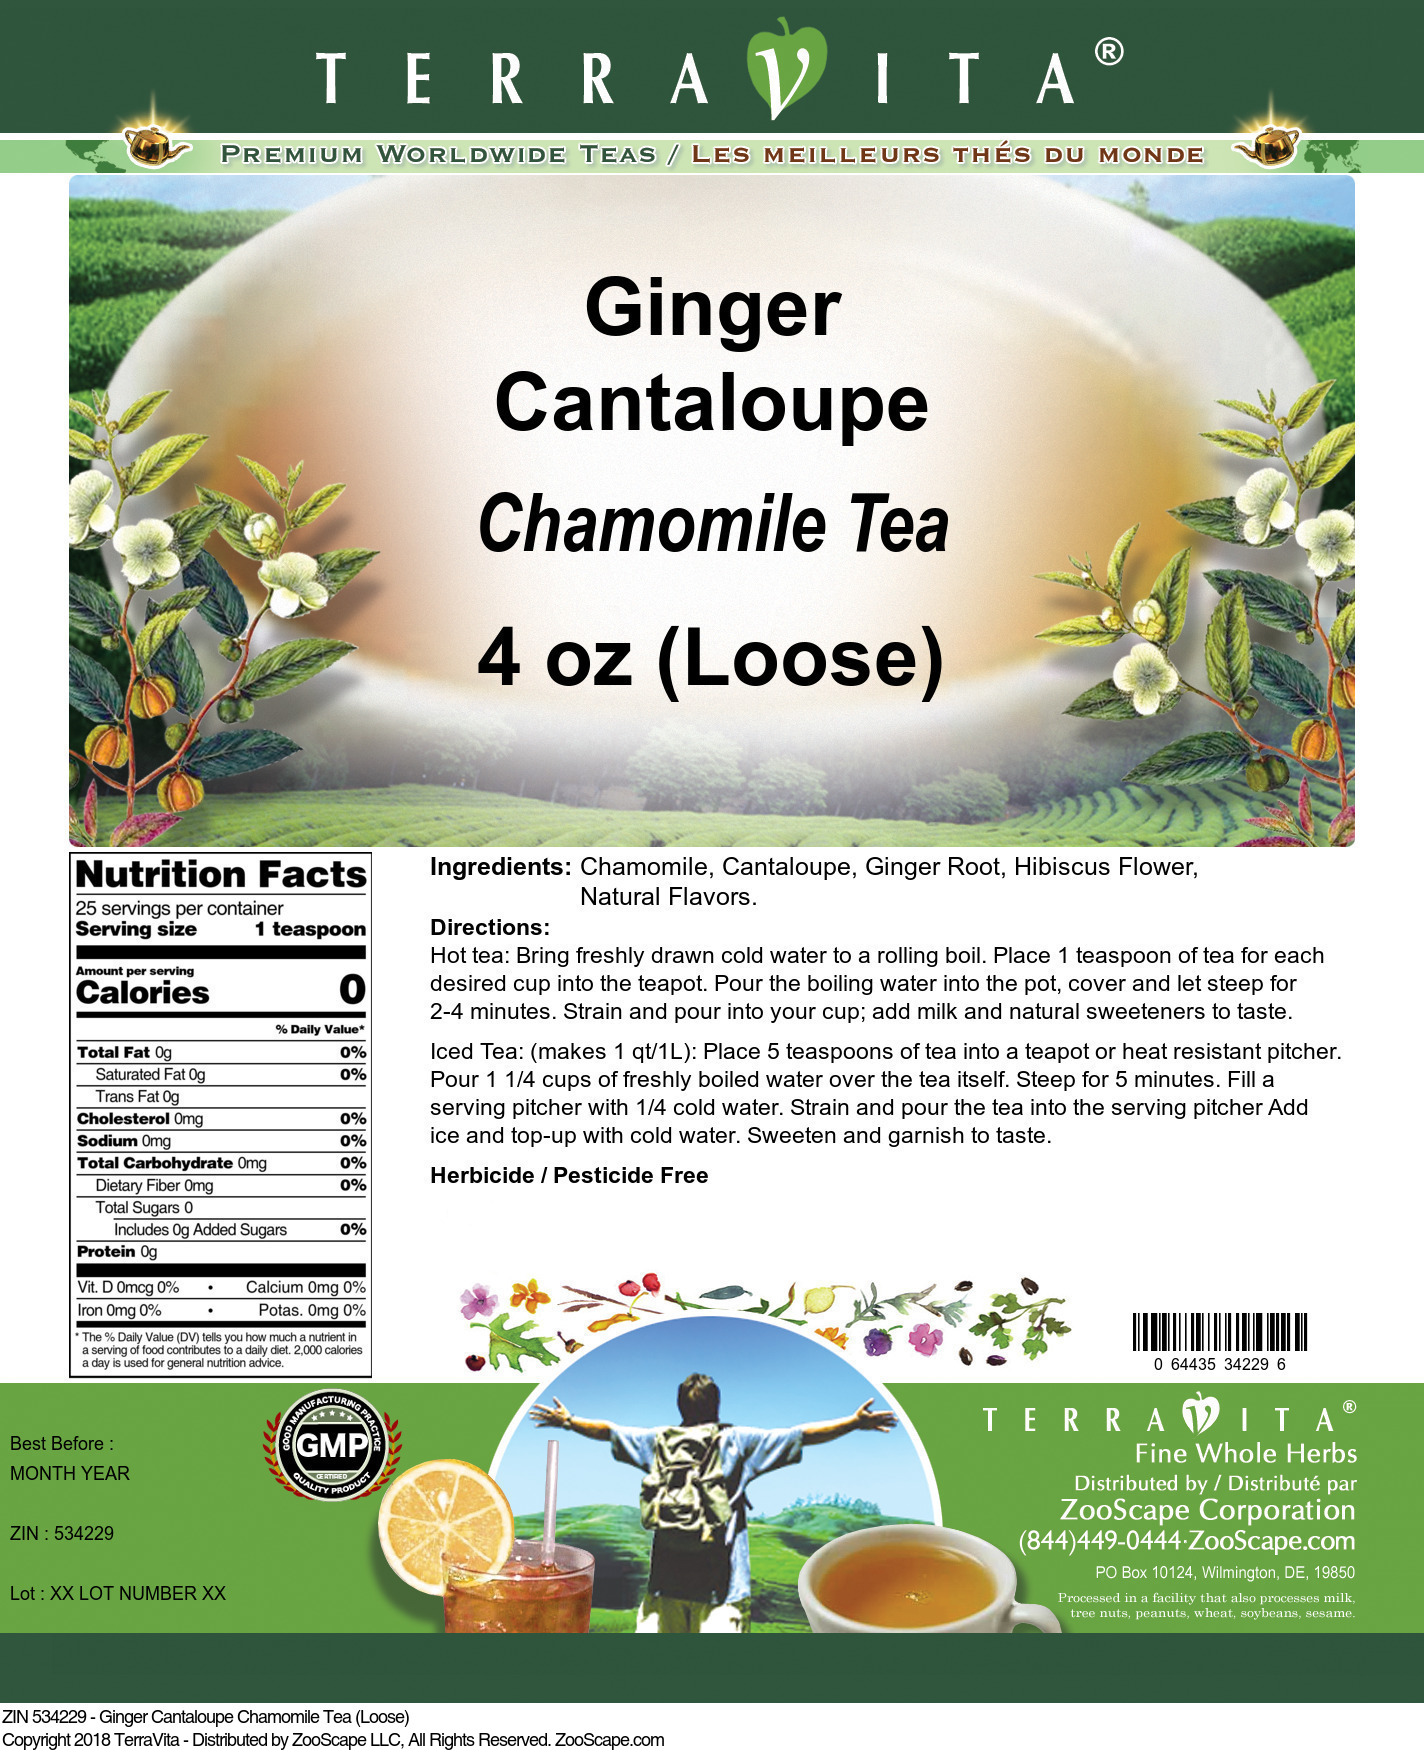 Ginger Cantaloupe Chamomile Tea (Loose) - Label